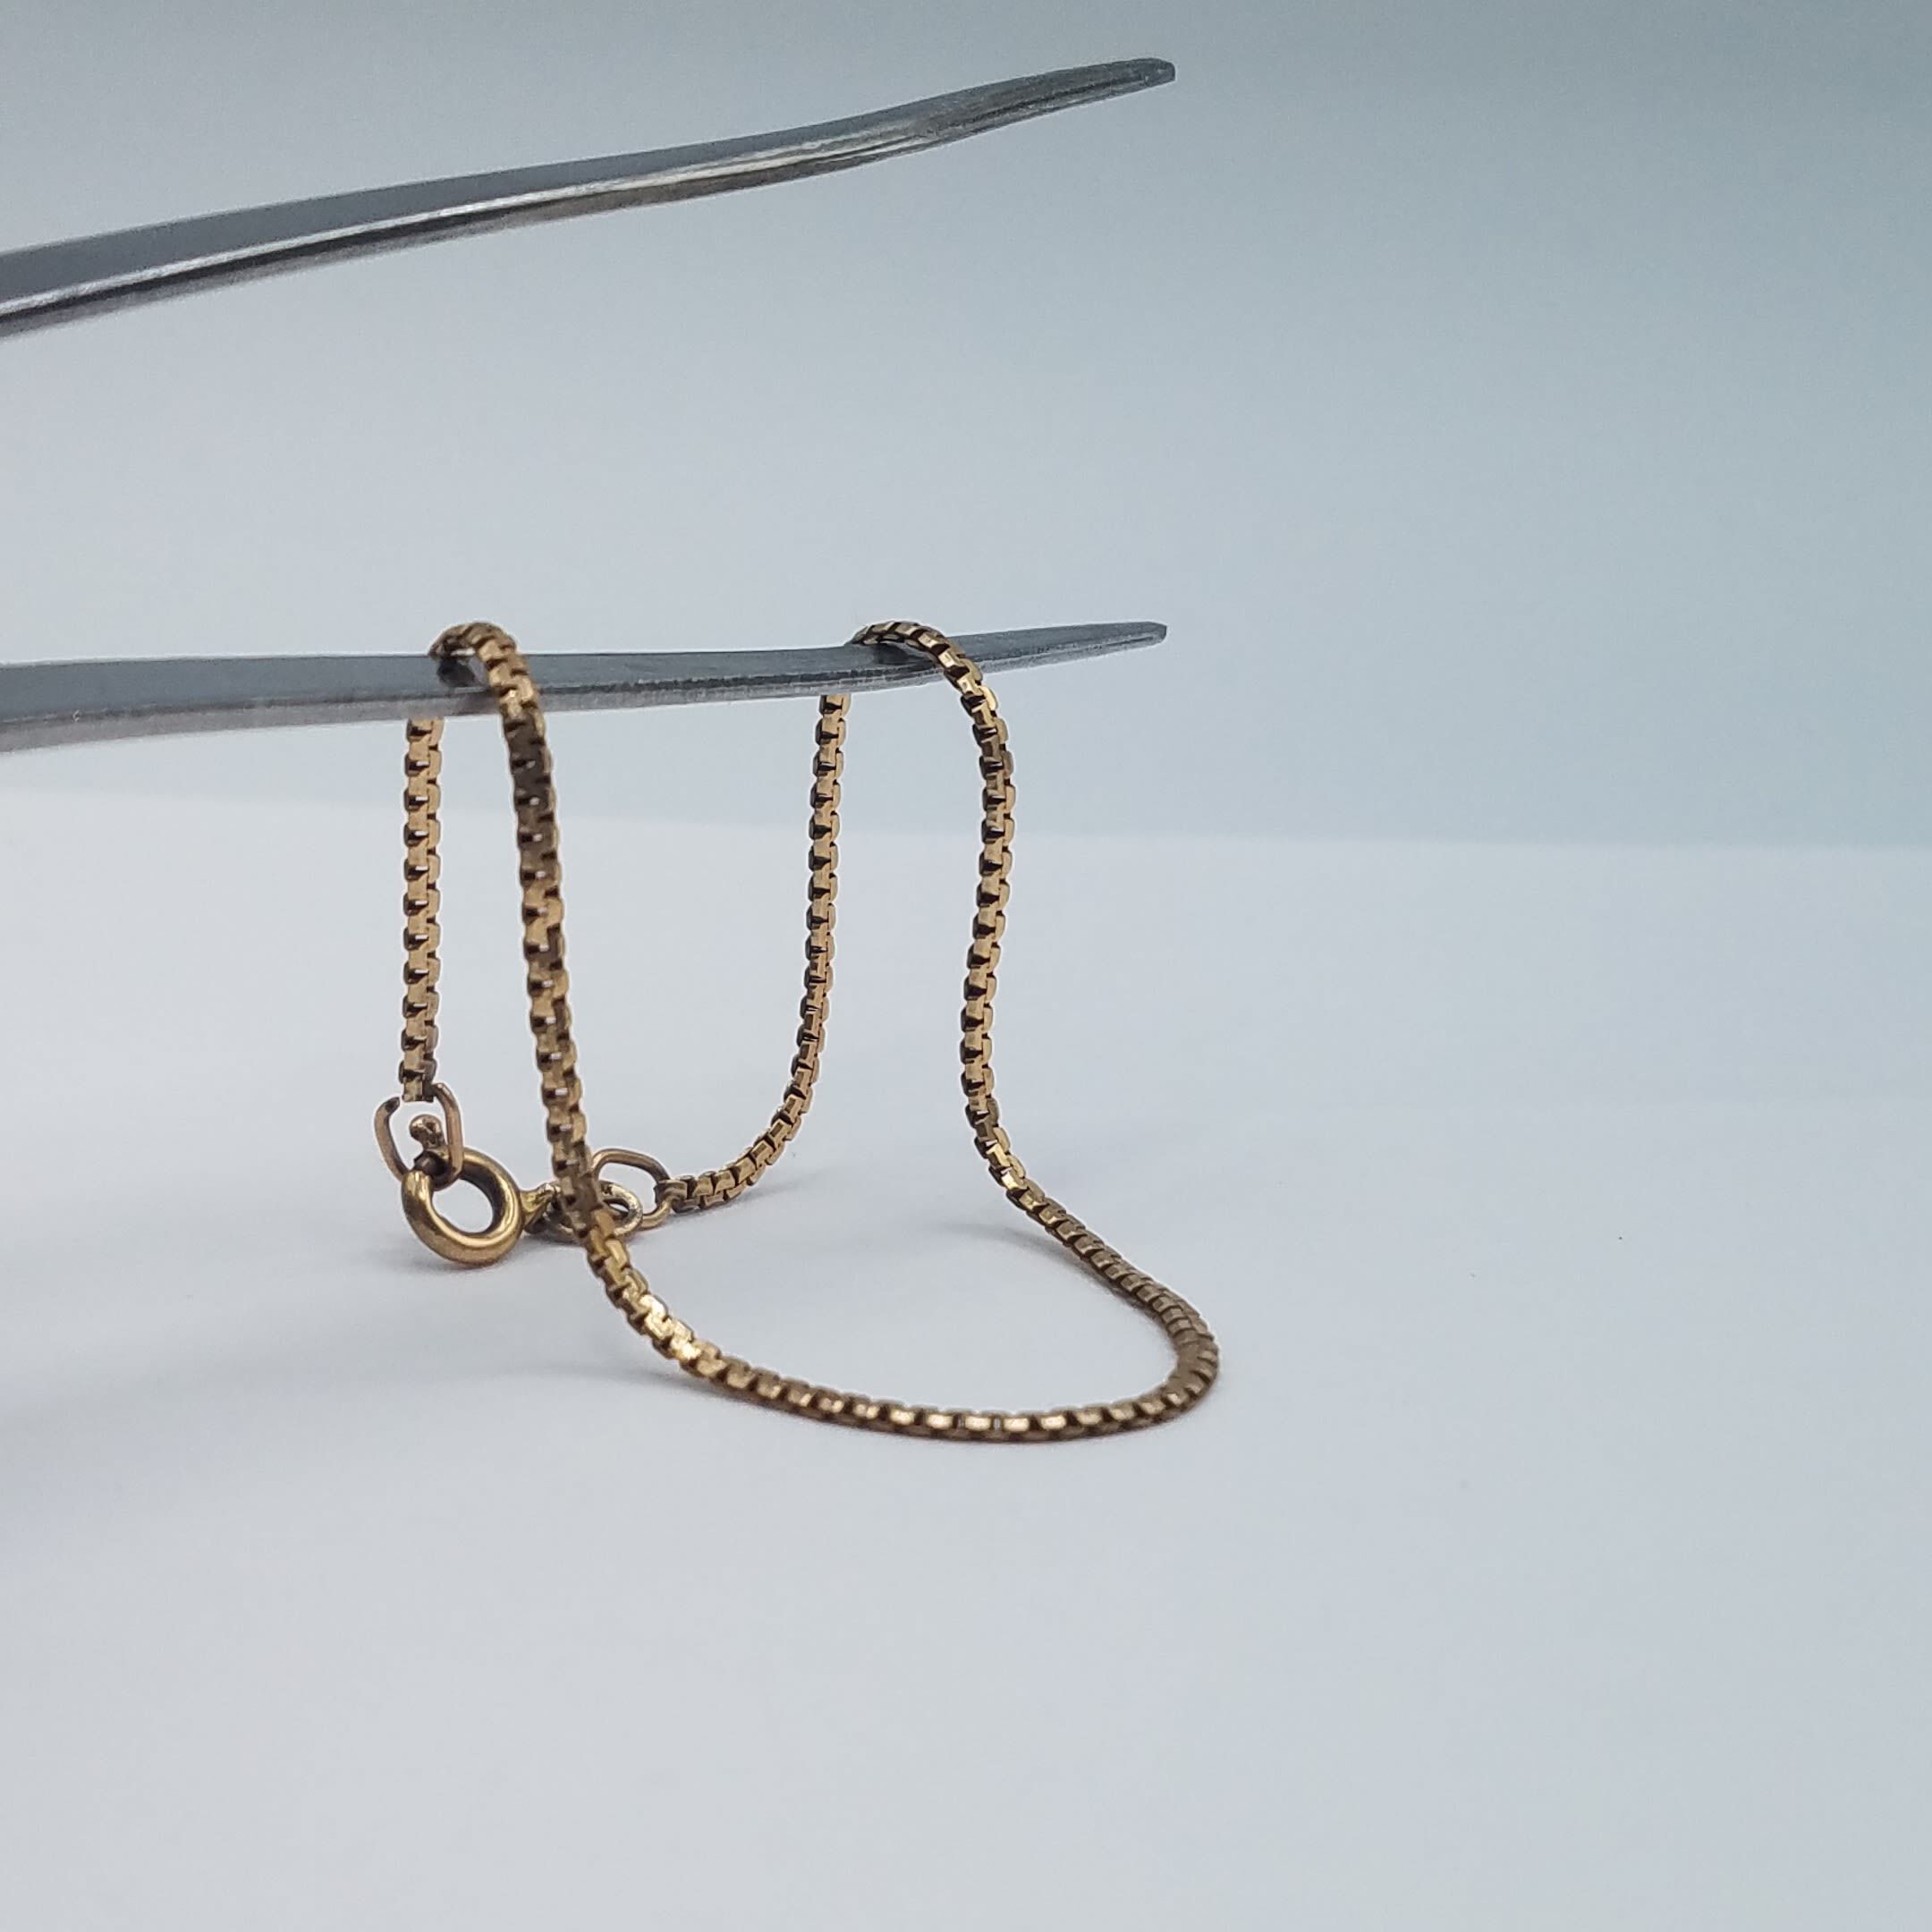 Breathtaking 6 Gram Gold Bangles Designs for Ultimate Elegance - Alibaba.com